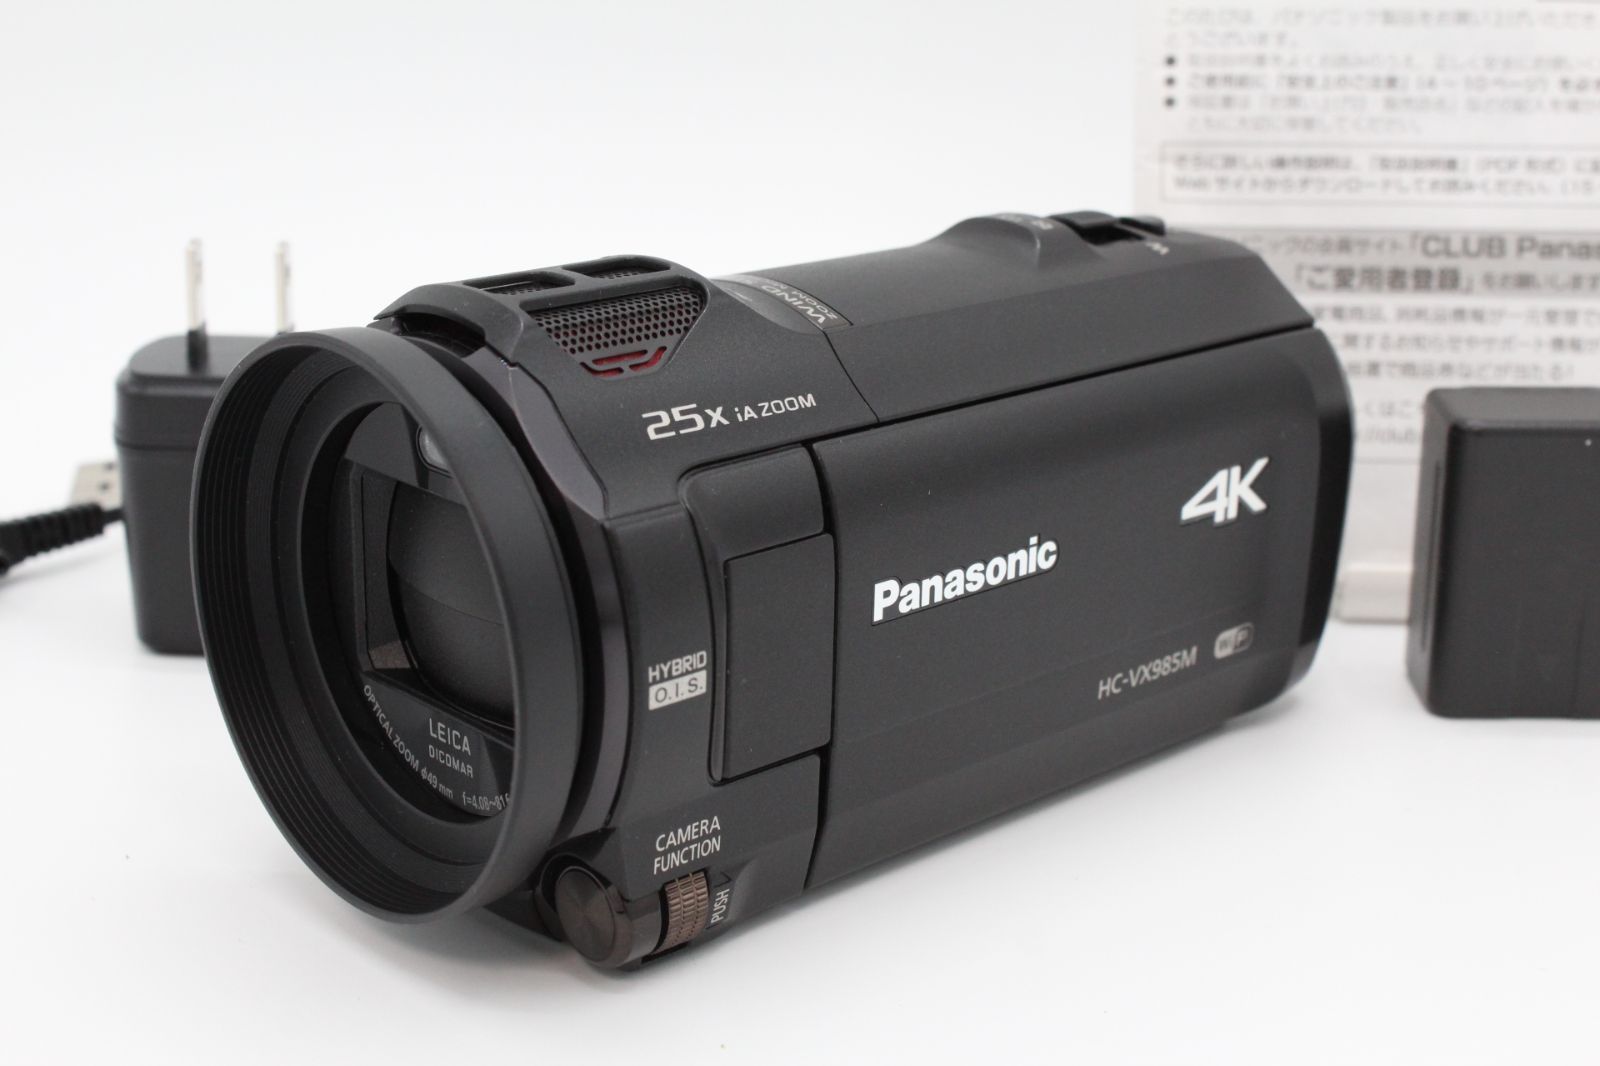 4Kビデオカメラ パナソニック VX985M 付属品(三脚) - カメラ